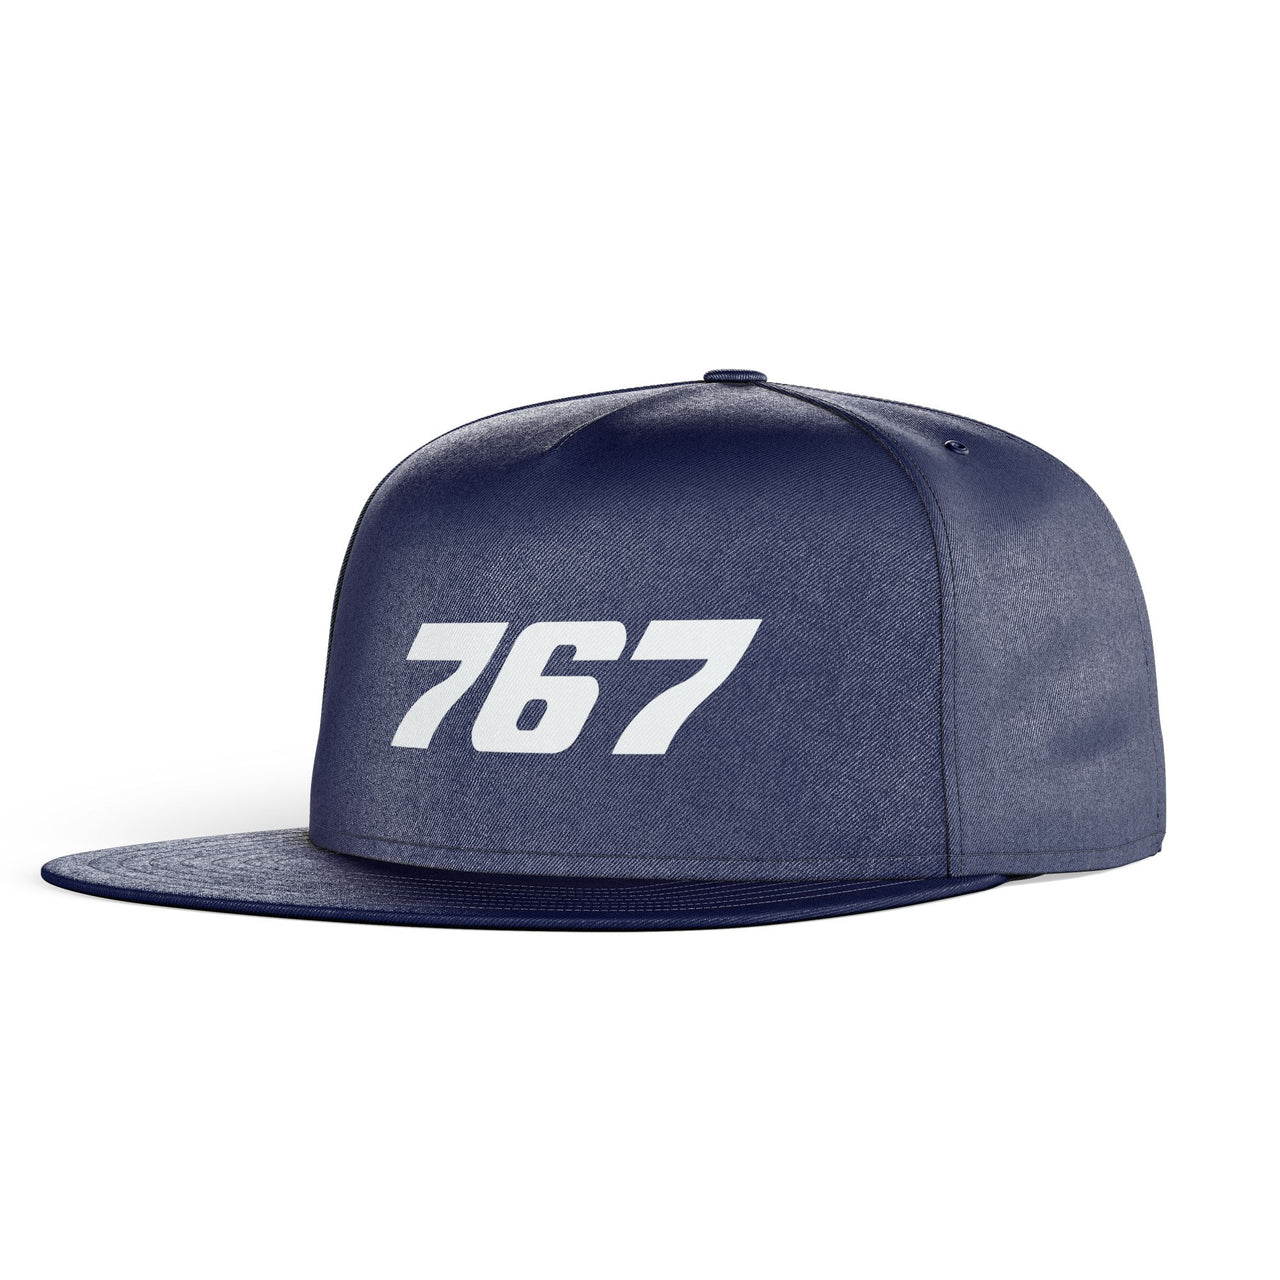 767 Flat Text Designed Snapback Caps & Hats